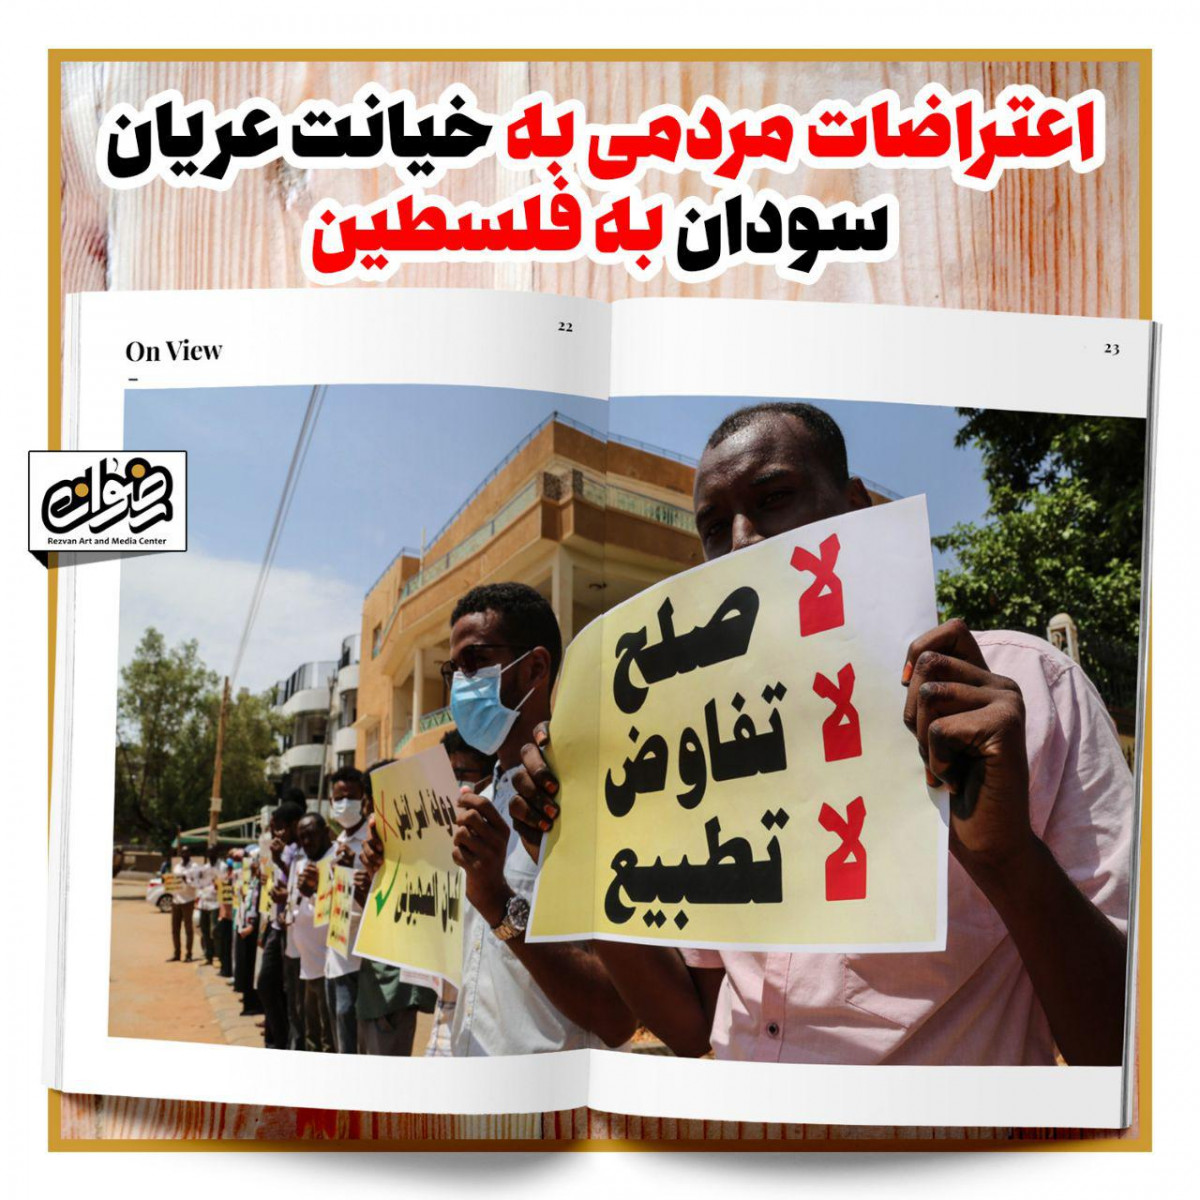 پوستر : اعتراضات مردمی به خیانت عربیان سودان